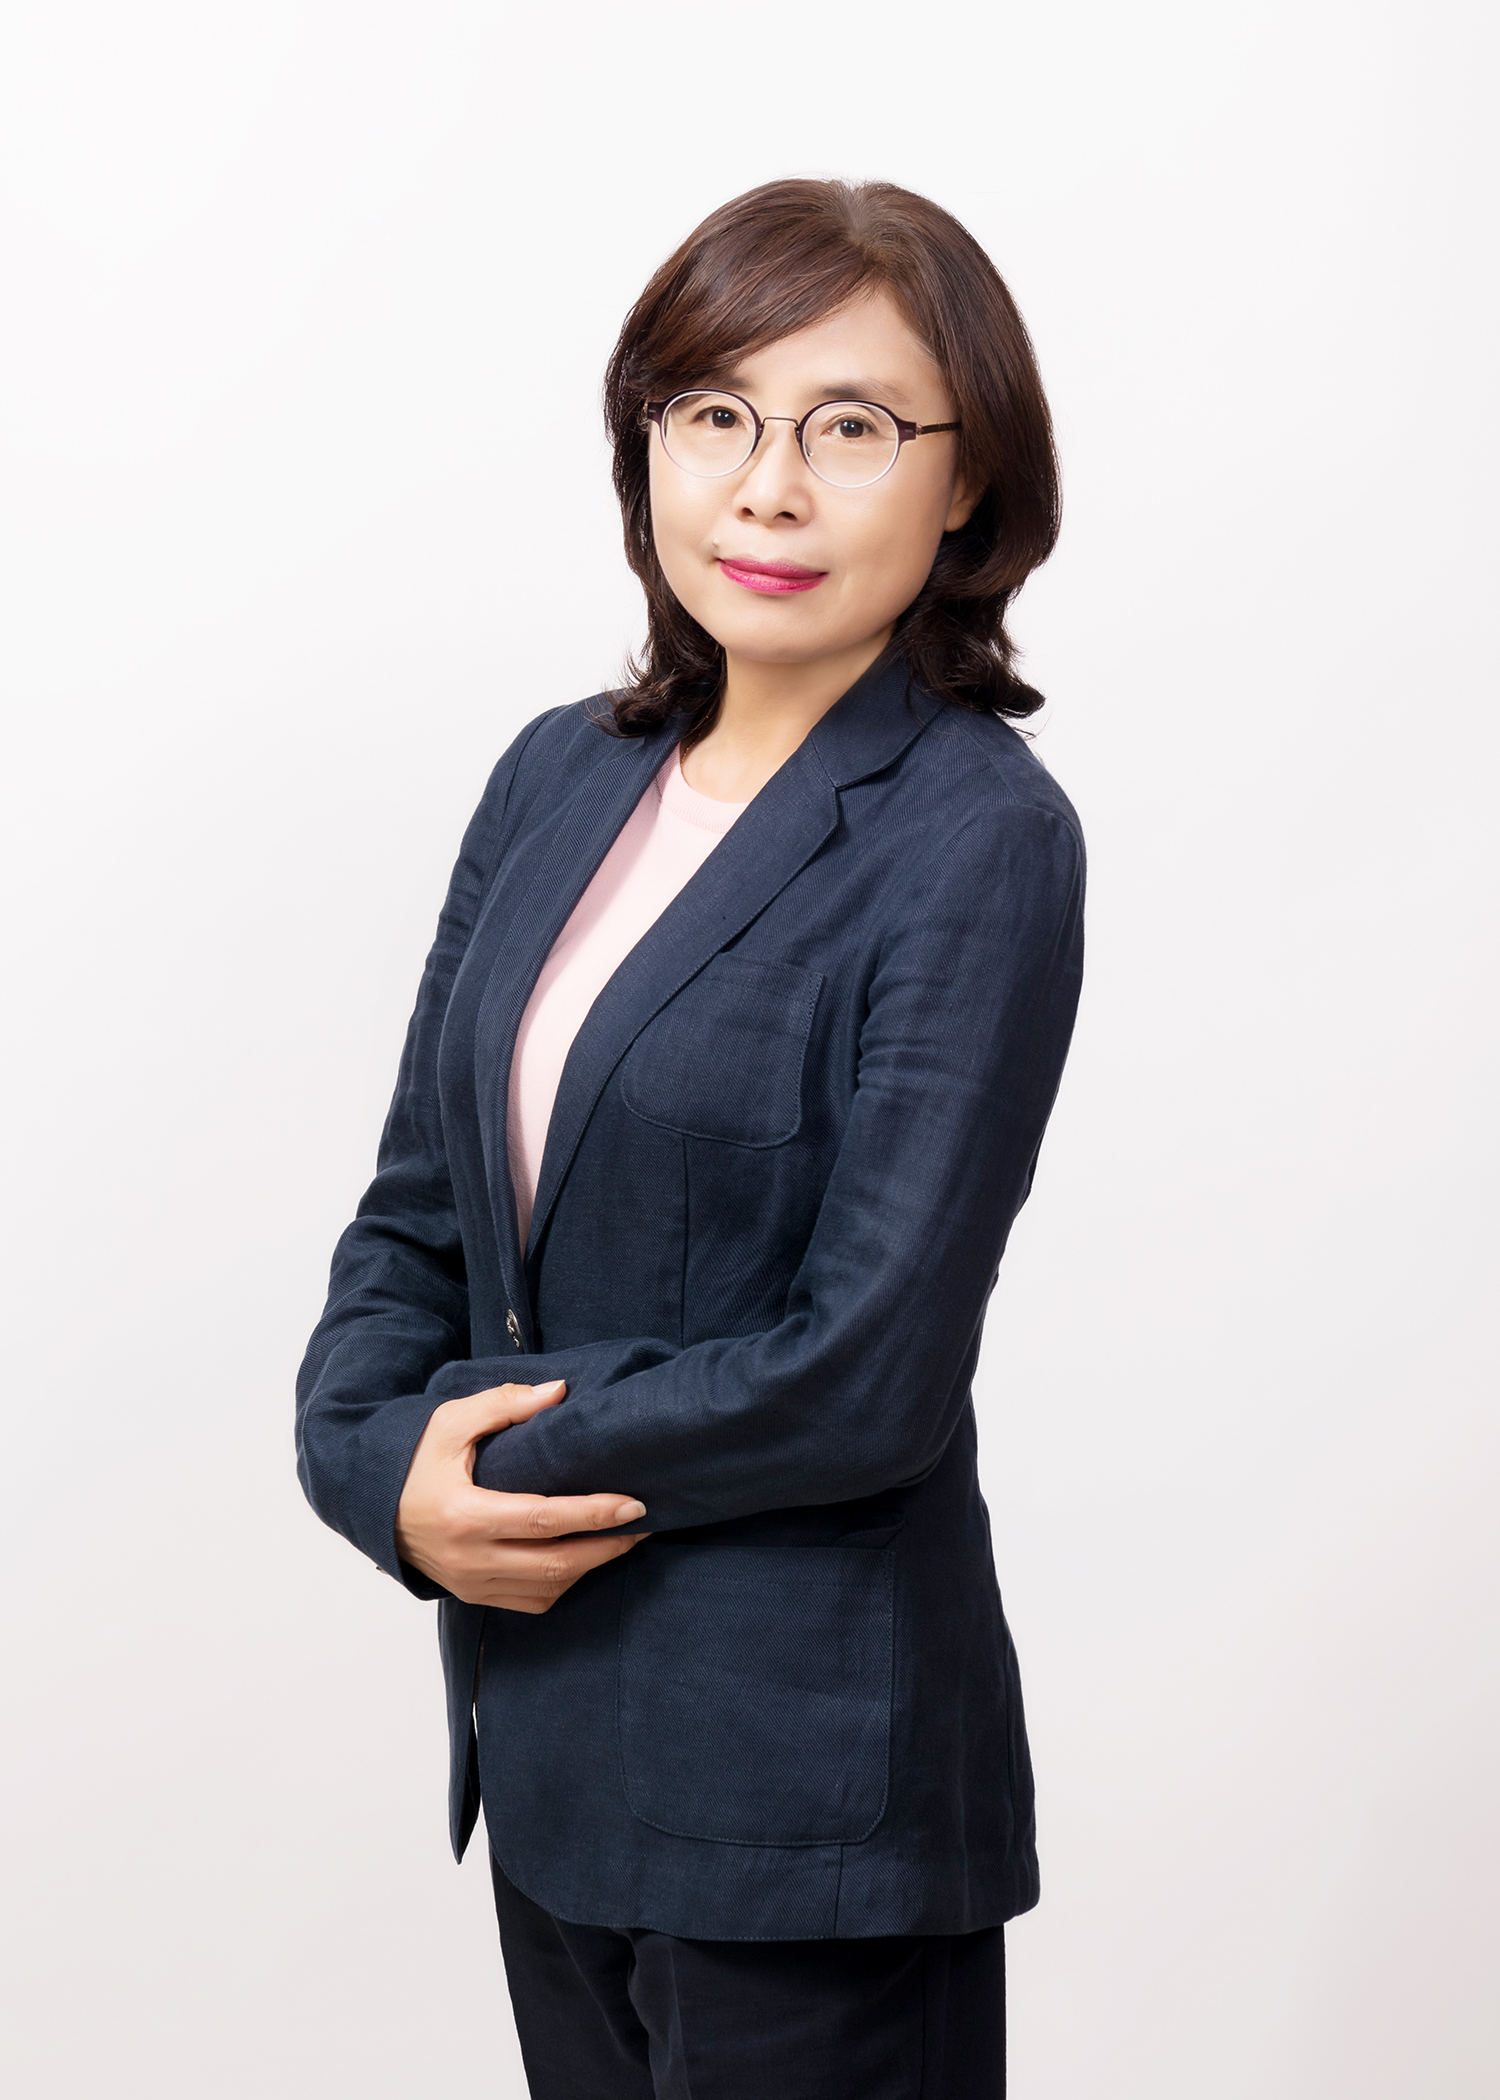 김기림 professor